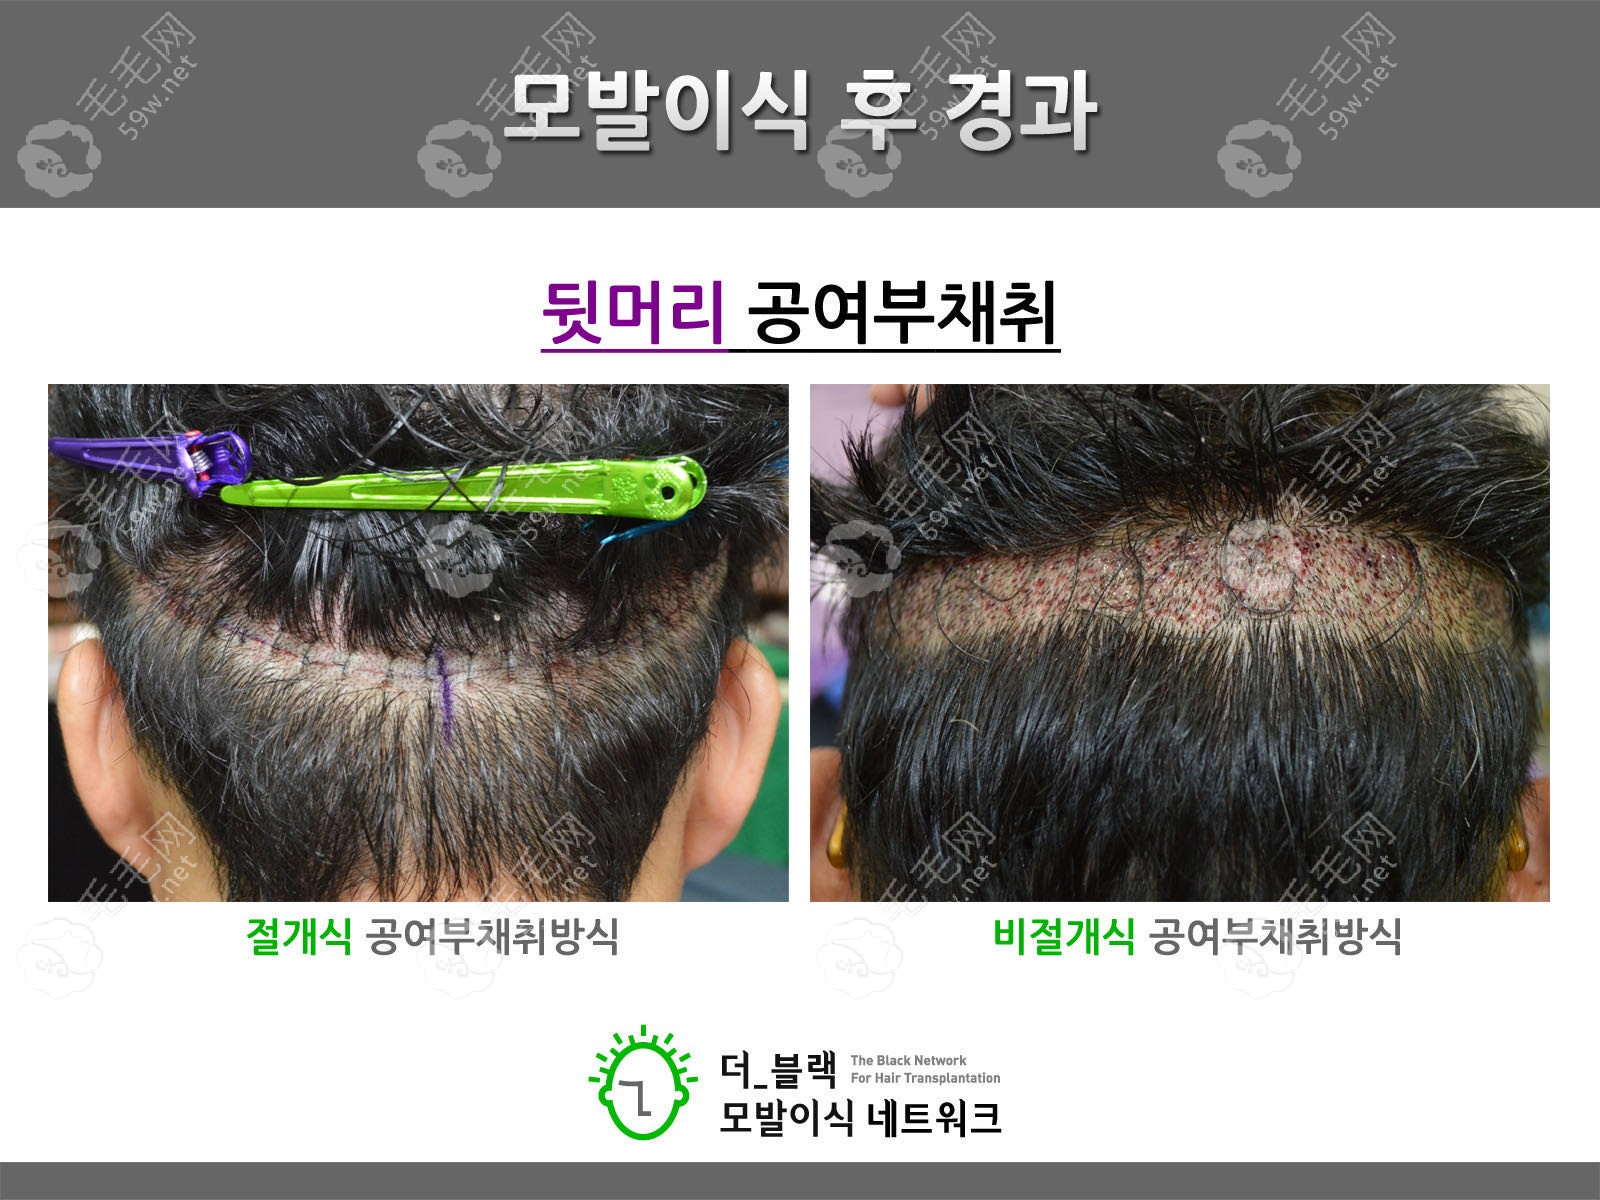 韩国布莱克植发实例图片:对比切开法和非切开法植发的区别